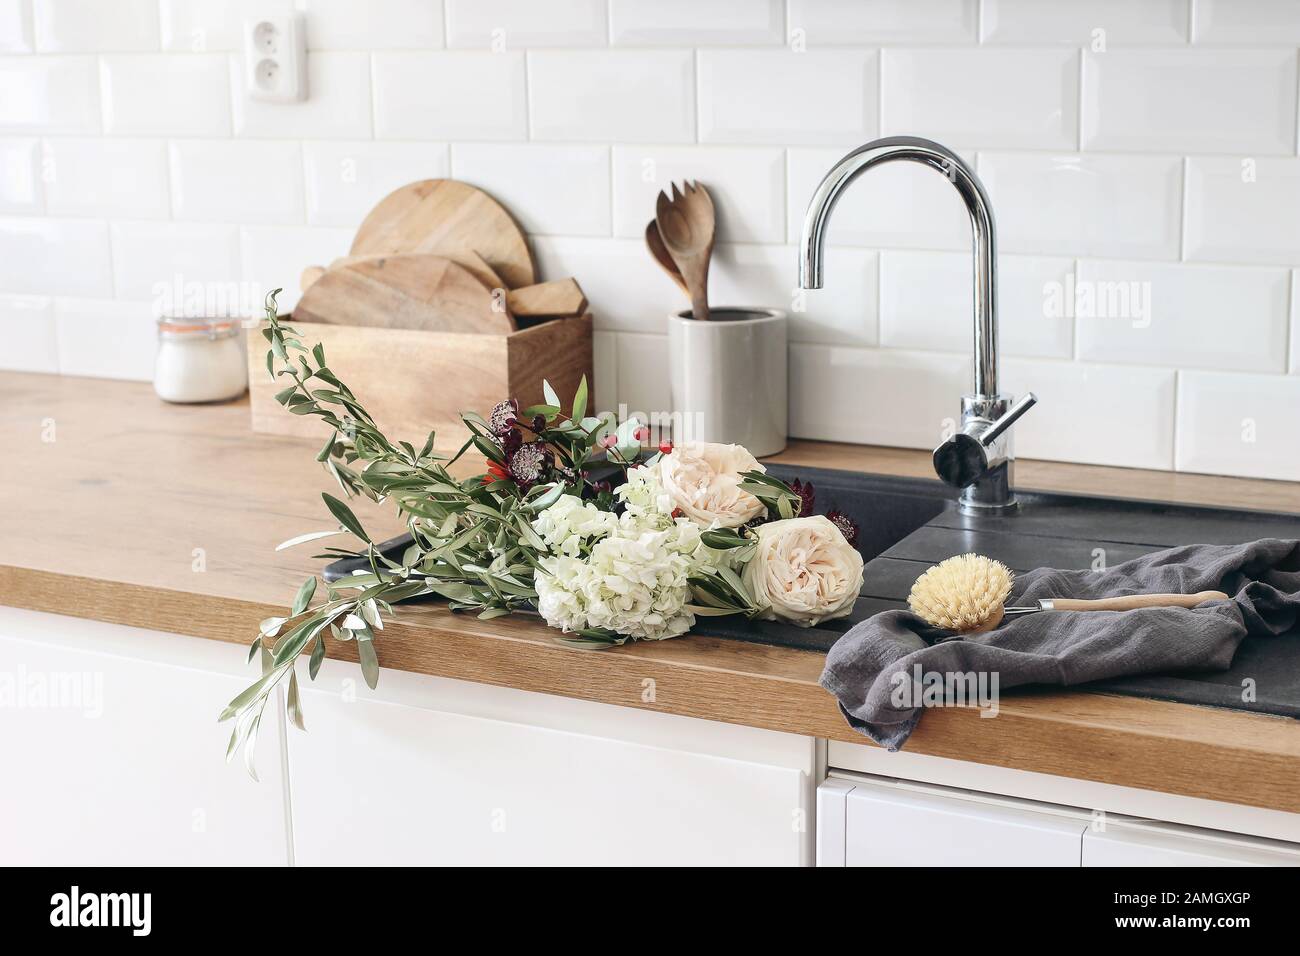 https://c8.alamy.com/compes/2amgxgp/primer-plano-del-interior-de-la-cocina-pared-de-ladrillo-blanco-baldosas-de-metro-encimeras-de-madera-con-utensilios-de-cocina-rosas-flores-en-lavabo-negro-escandinavo-moderno-2amgxgp.jpg